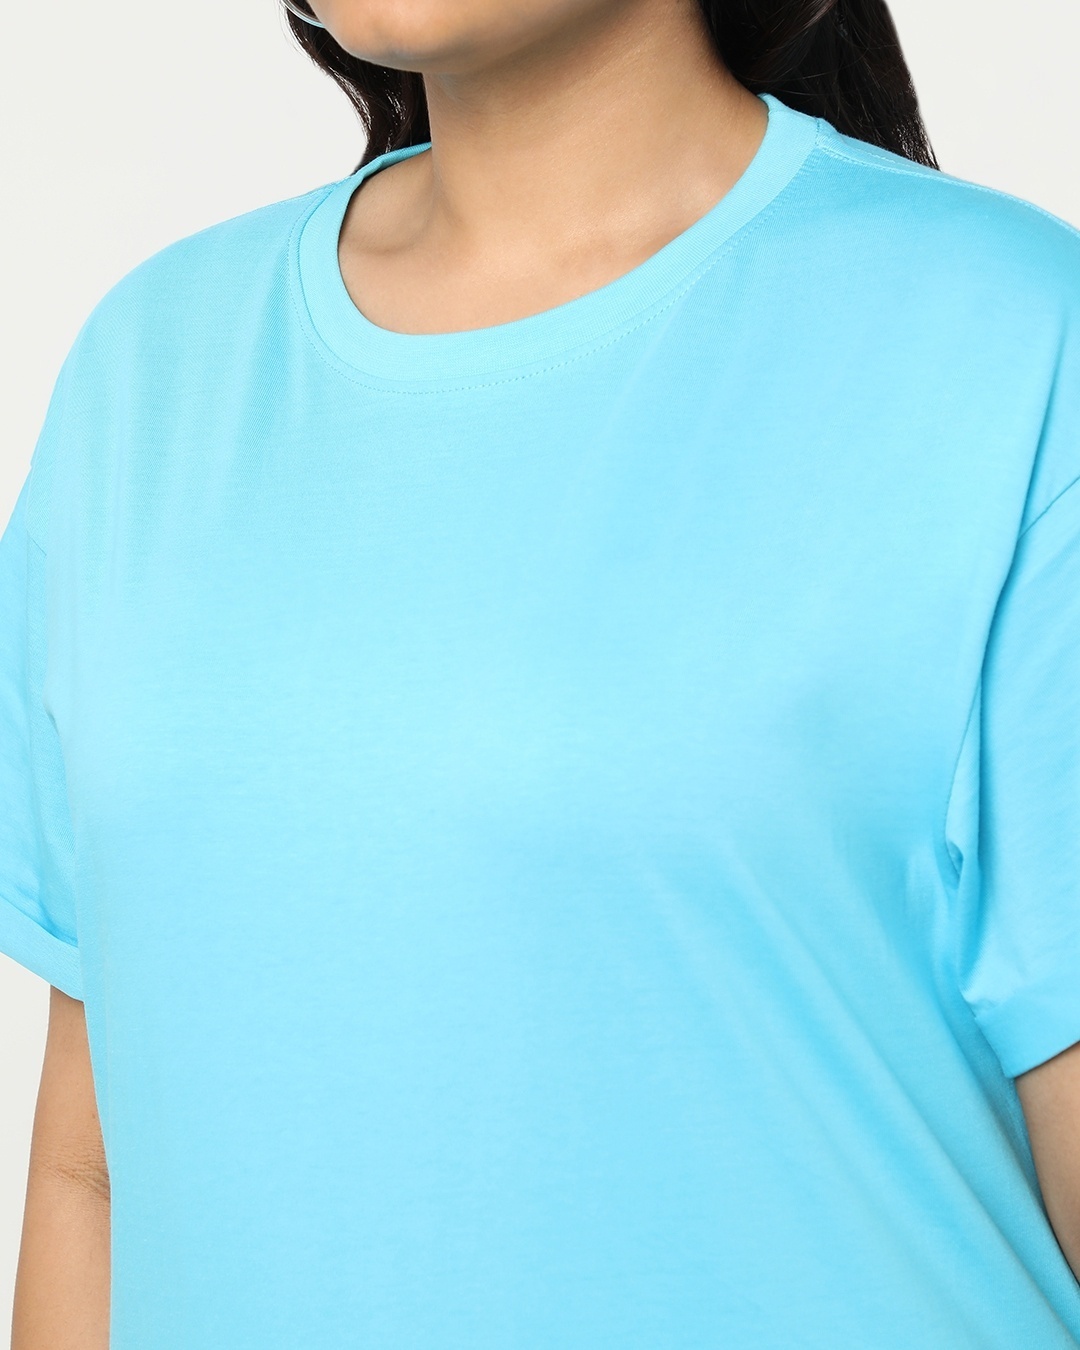 Shop Upbeat Blue Plus Size Boyfriend T-shirt